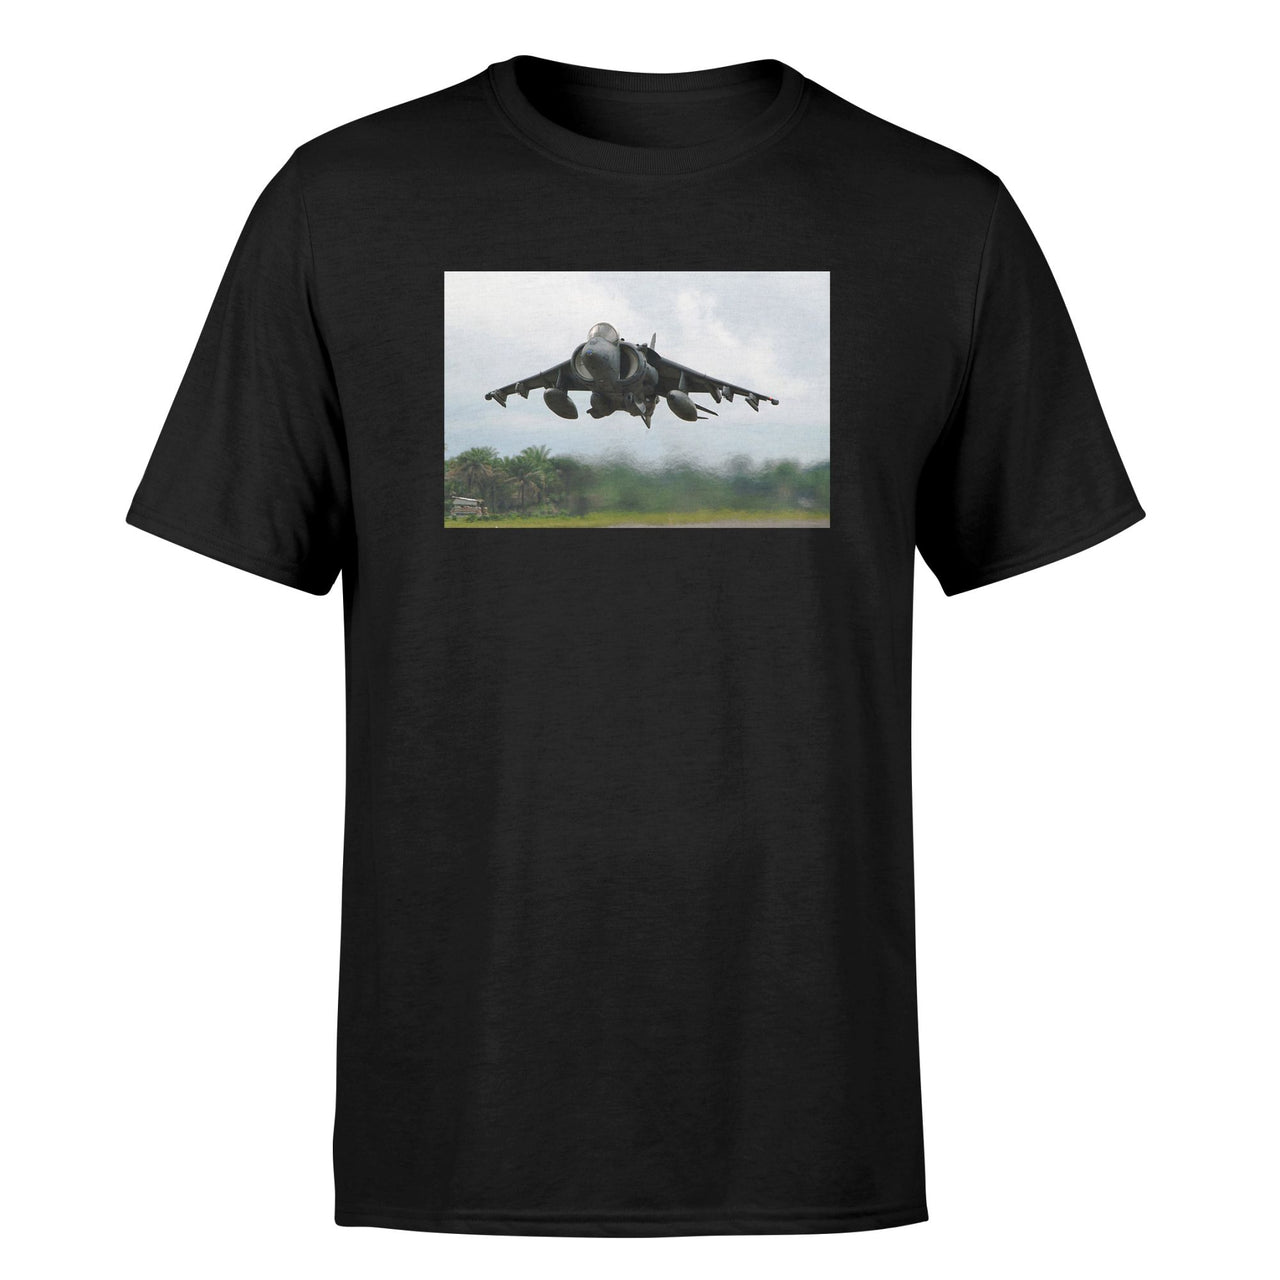 Departing Super Fighter Jet Designed T-Shirts